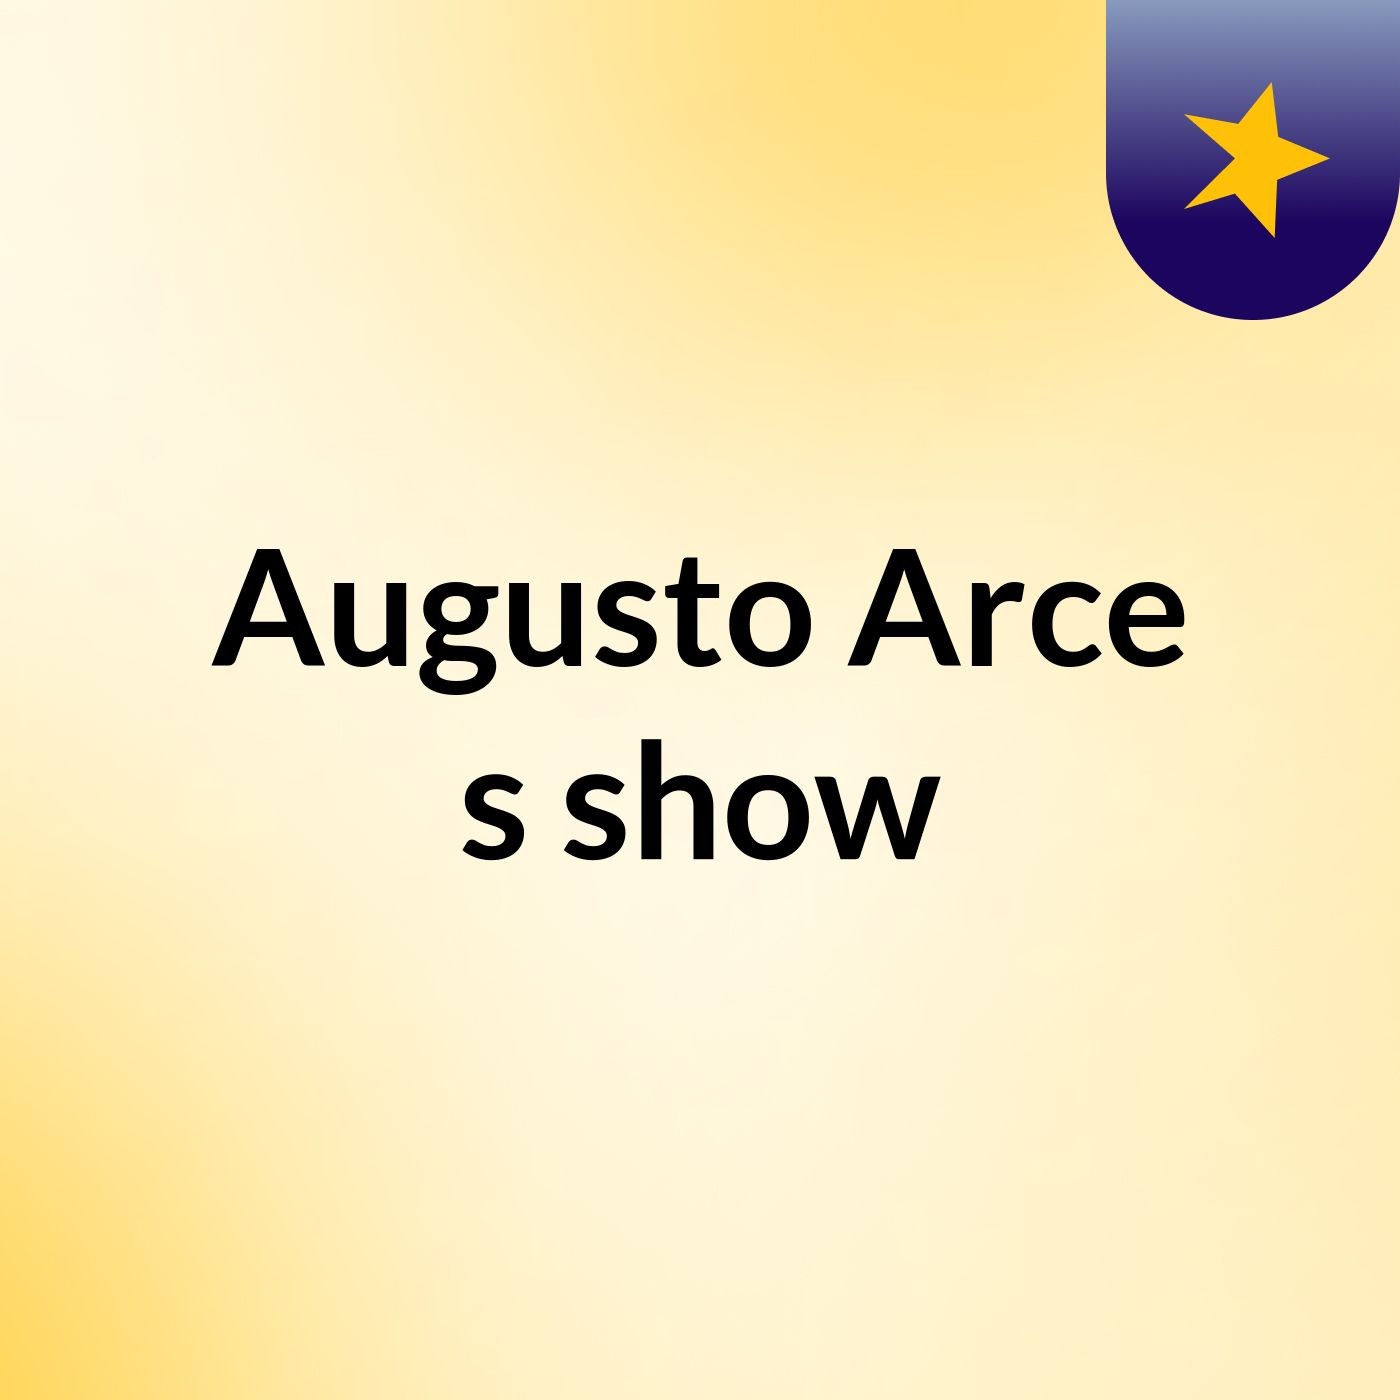 Augusto Arce's show